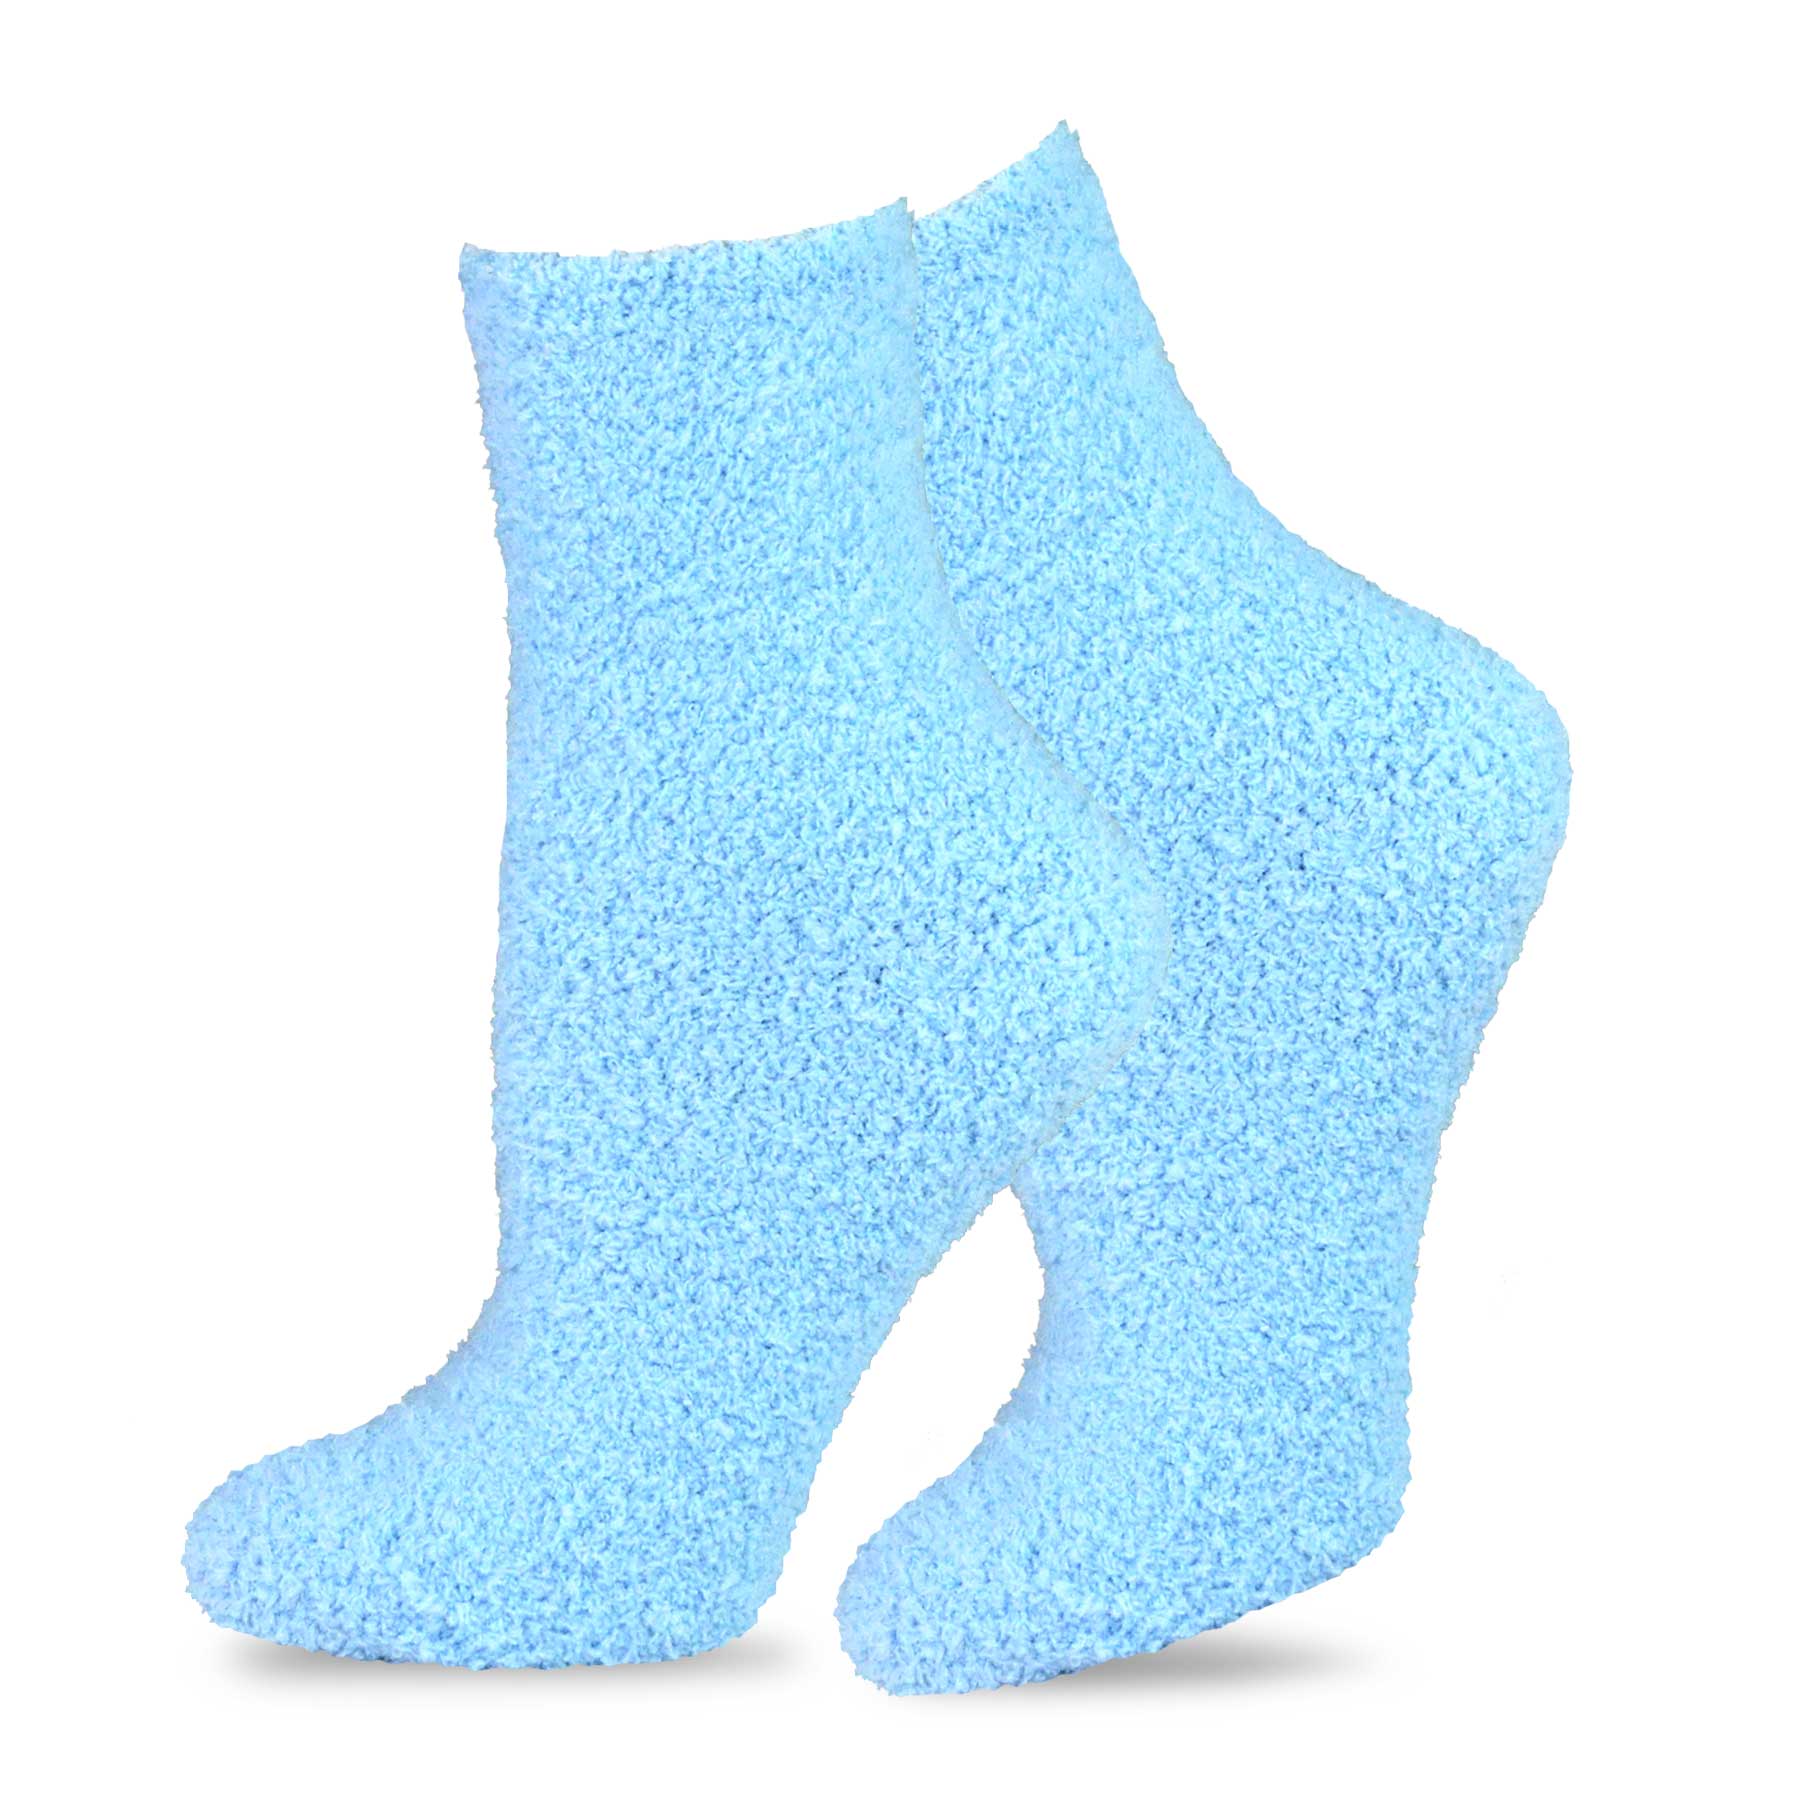 TeeHee Socks Women's Fuzzy Polyester Crew Light Blue 2-Pack (11190)